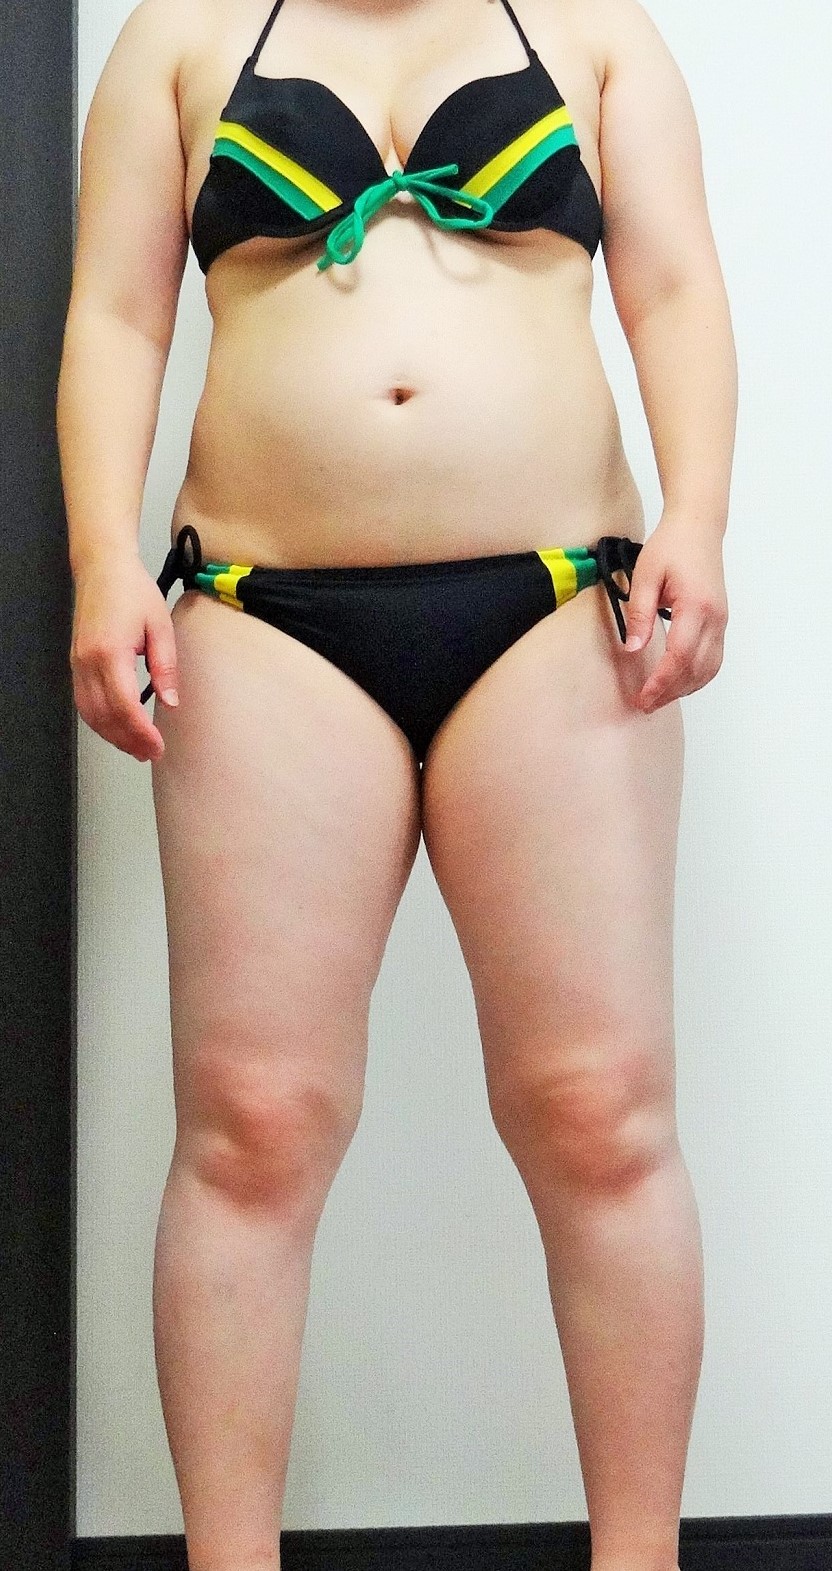 キロ 女性 70 体重 163センチ70キロ女性の見た目・BMIを徹底調査